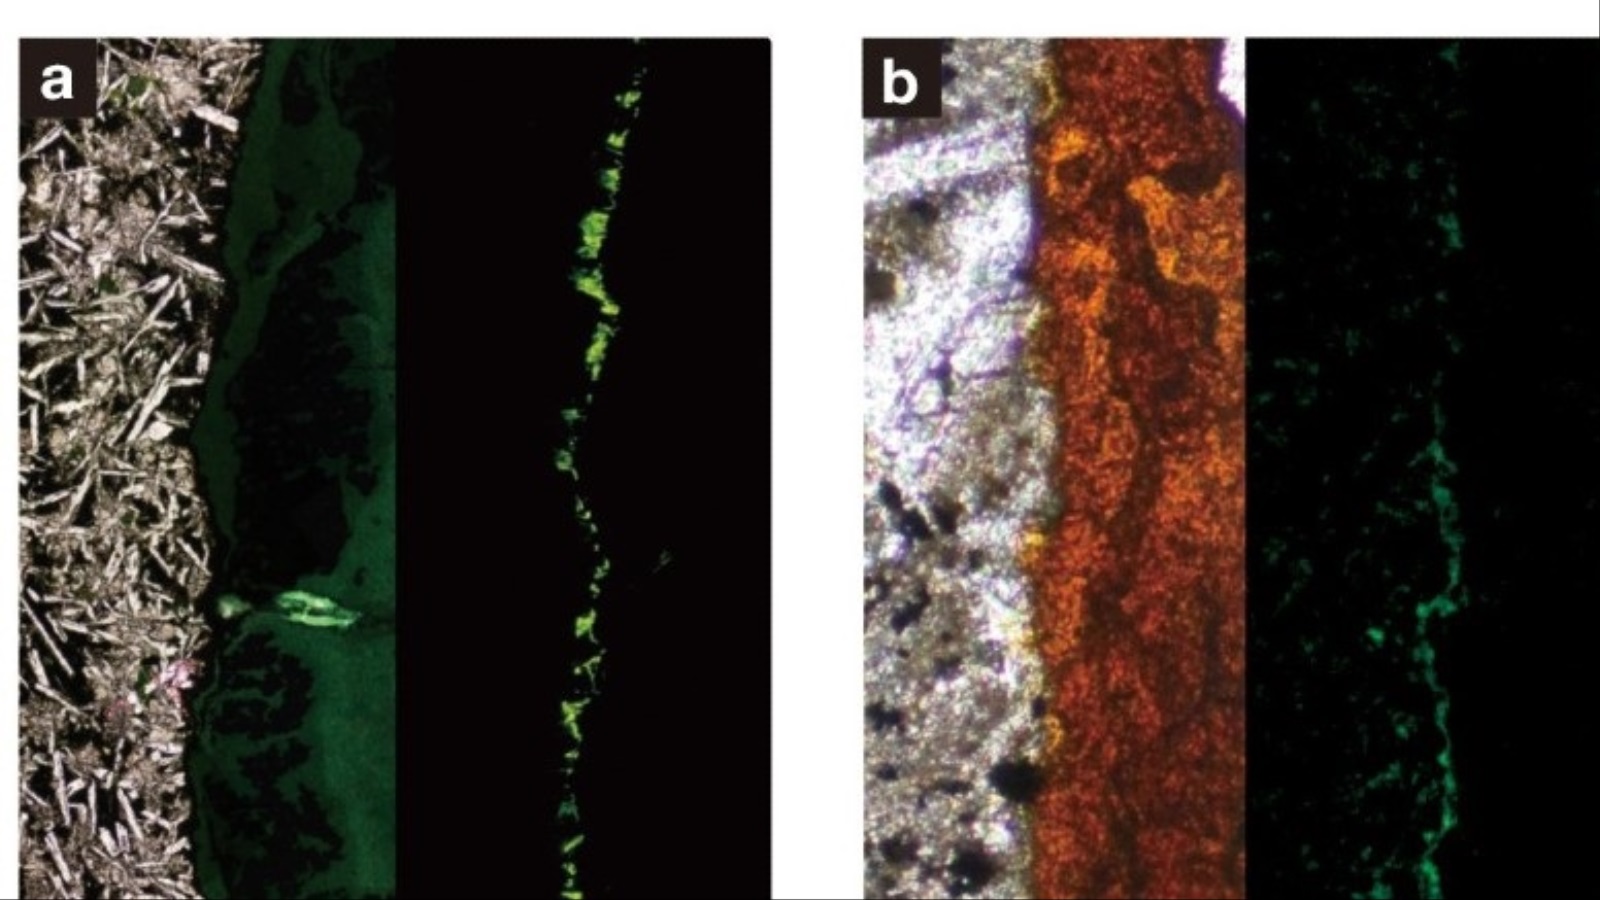 ‪صور مقطعية لعينات الصخور التي تحتوي على البكتيريا، الصخور البازلتية بالرمادي‬ 
صور مقطعية لعينات الصخور التي تحتوي على البكتيريا، الصخور البازلتية بالرمادي والمواد الطينية بالبرتقالي والبكتيريا بالأخضر (جامعة طوكيو)
